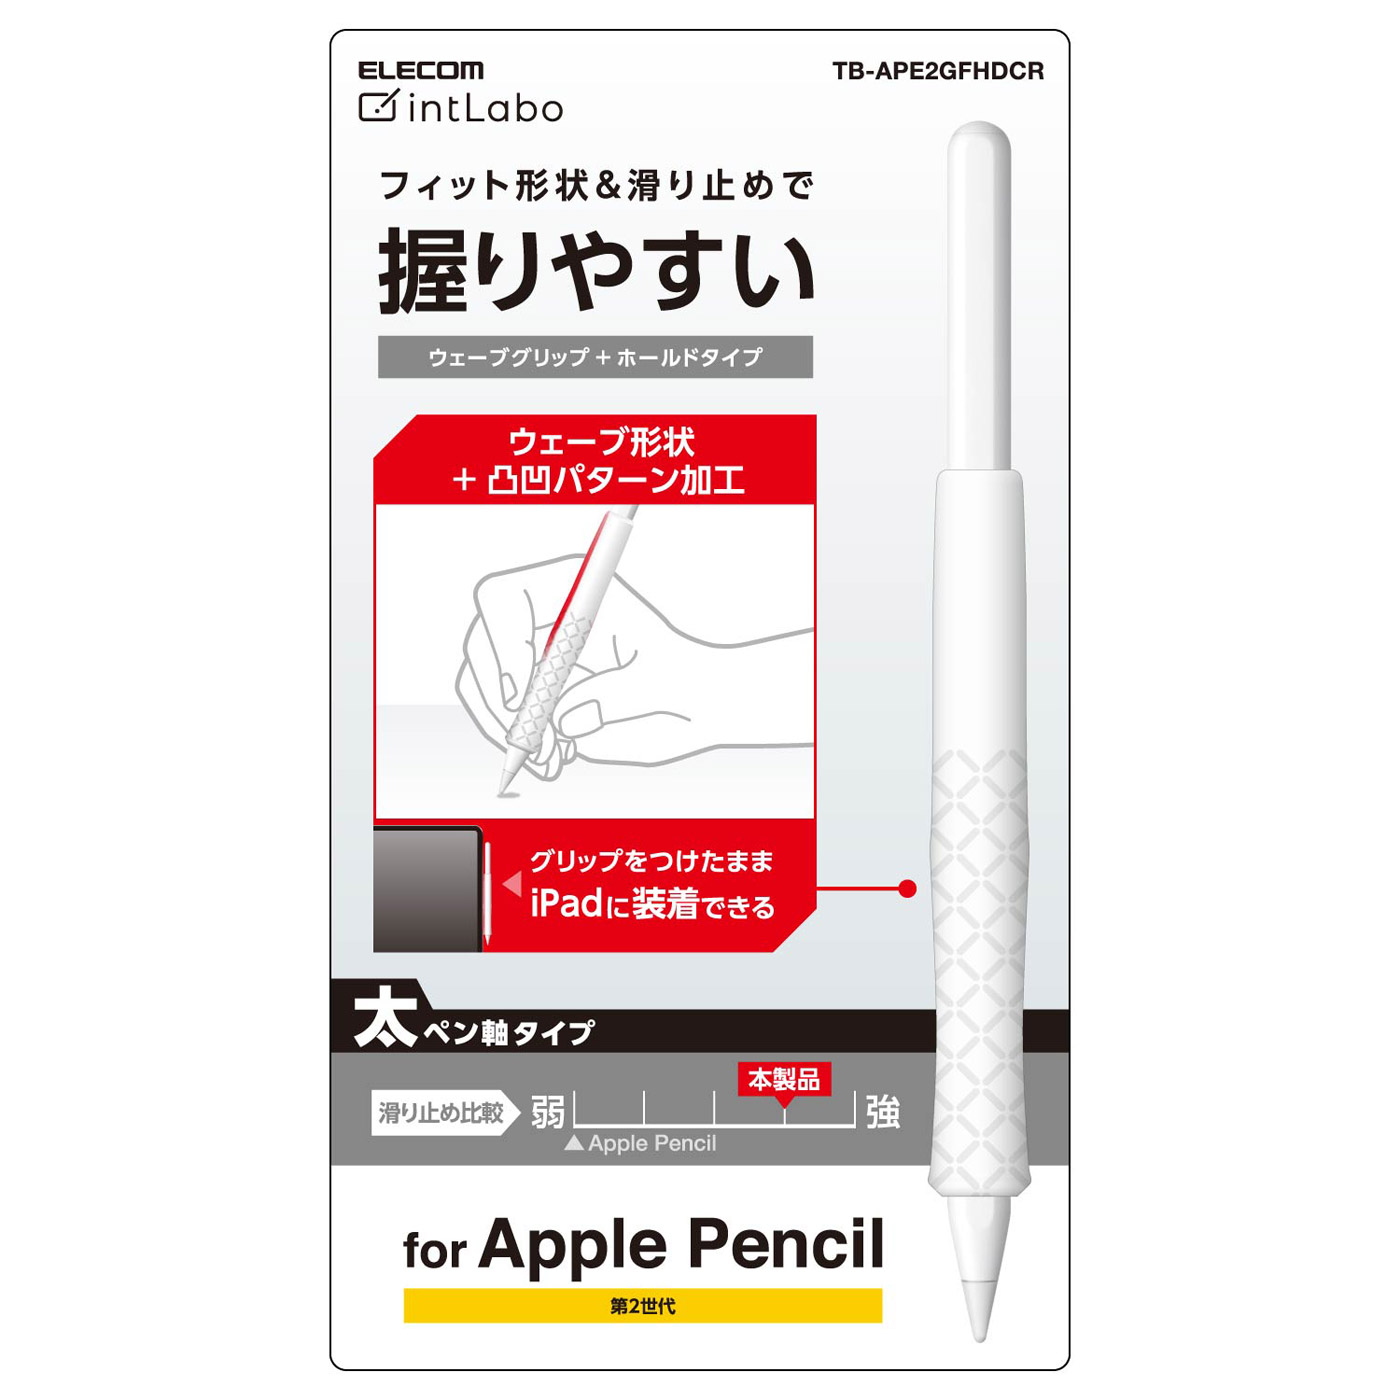 Apple Pencil 第2世代 MU8F2J A パソコン PC タブレット アクセサリー ipad アップルペンシル